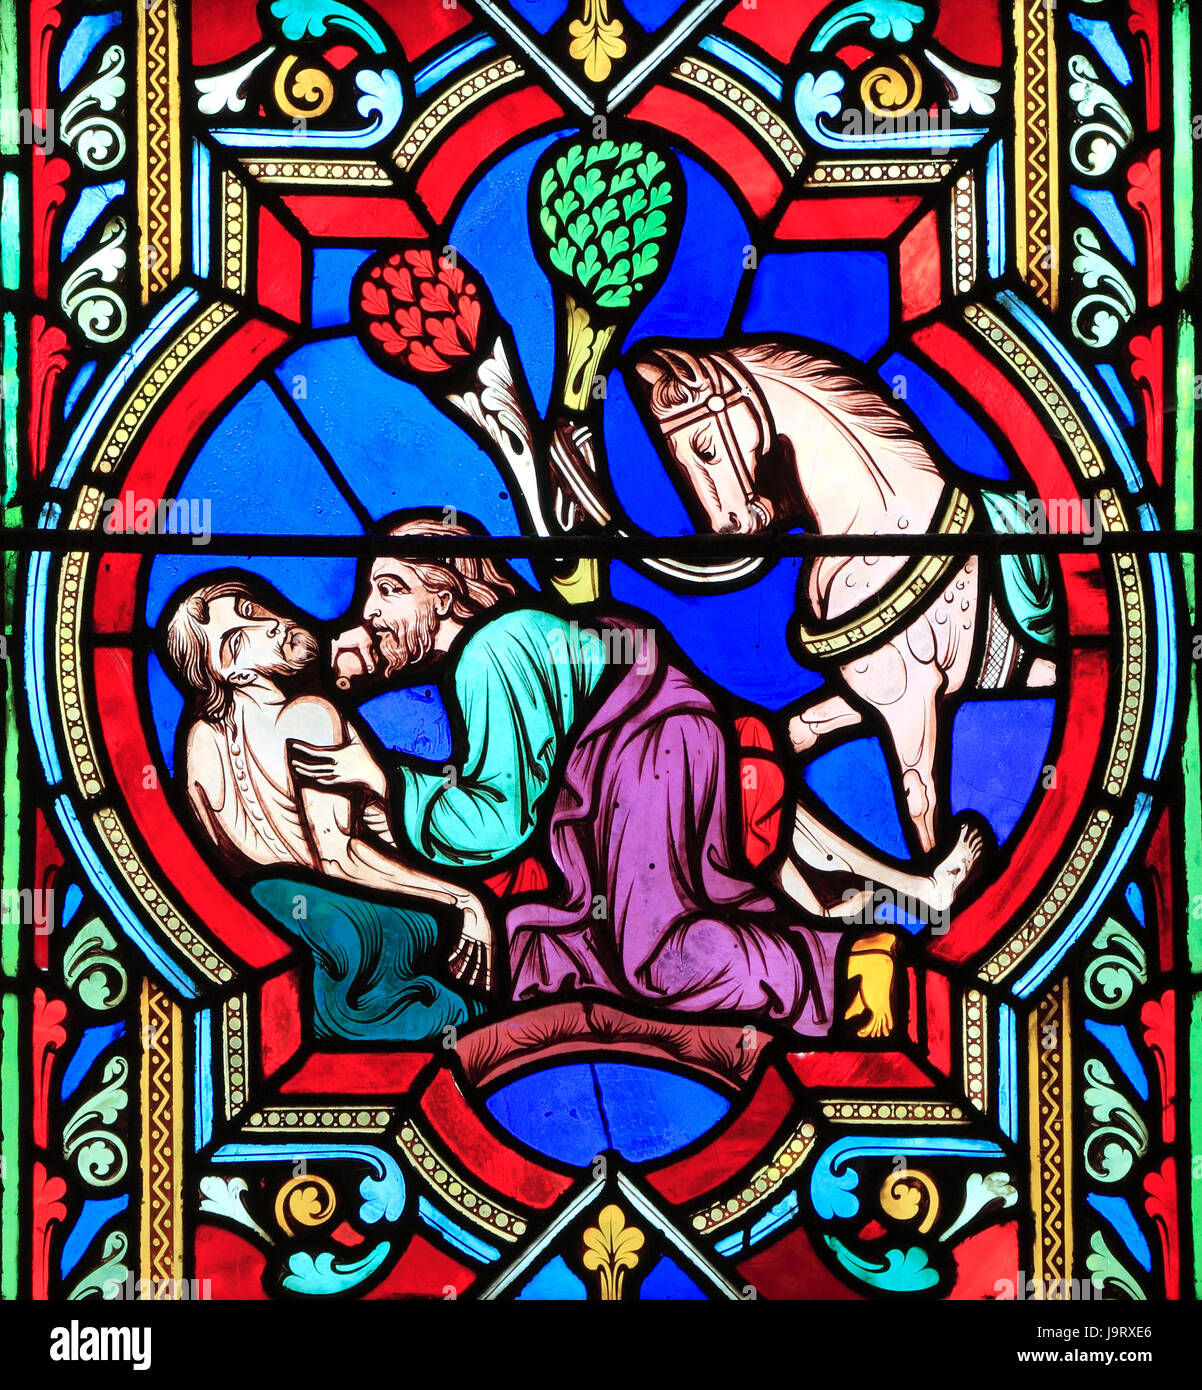 Das Gleichnis des Barmherzigen Samariters, Samariter sieht den verletzten Reisenden und hilft ihm, Oudinot von Paris, 1859, Feltwell, Norfolk, England, UK Stockfoto